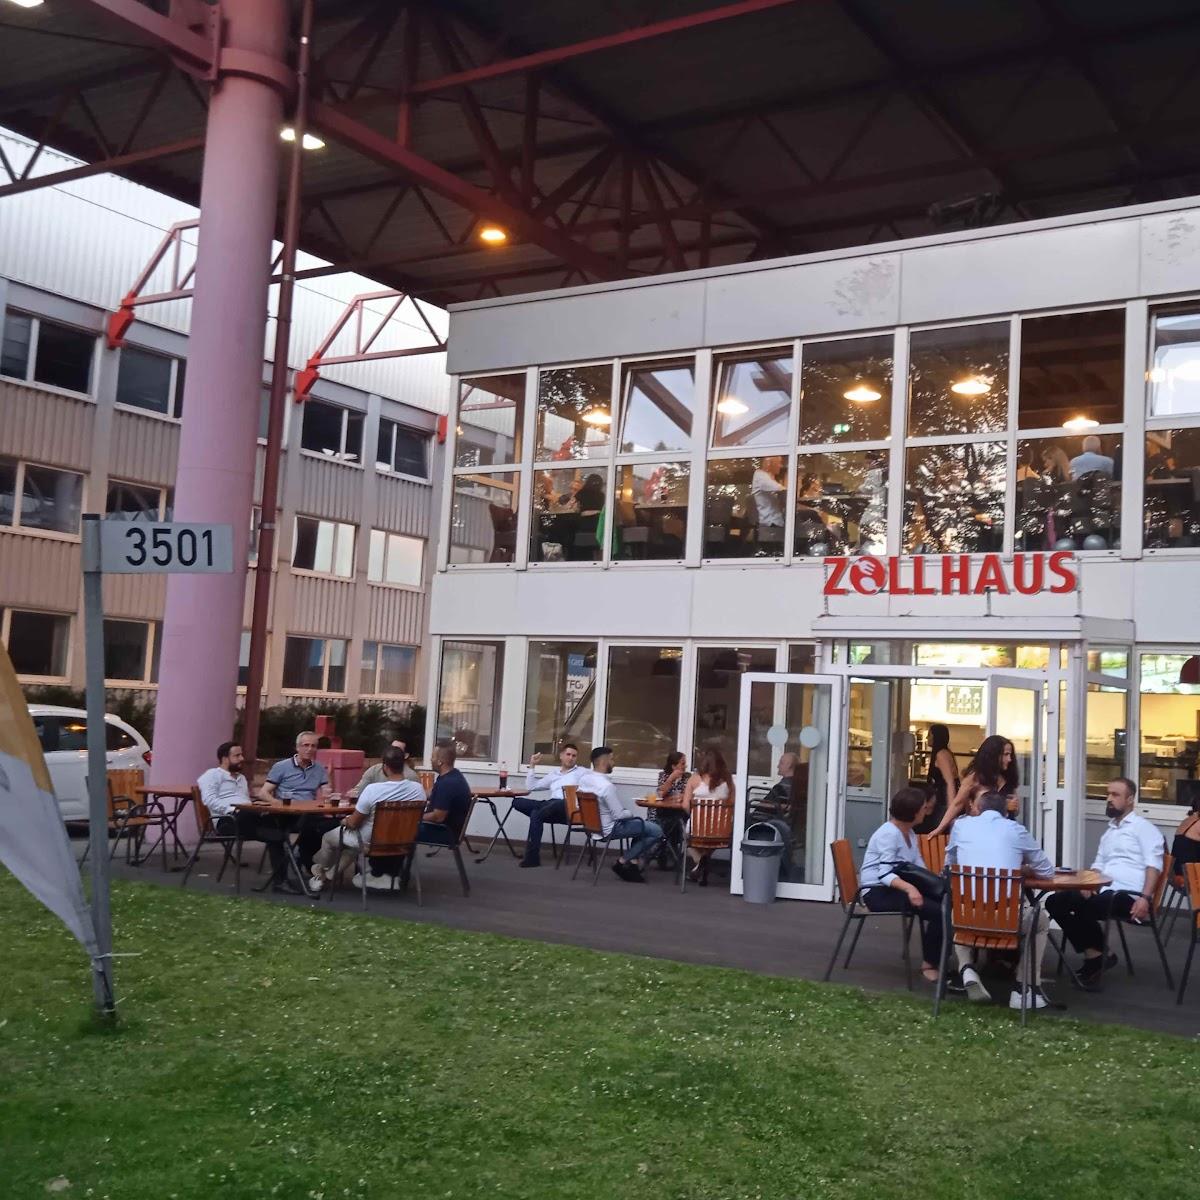 Restaurant "Zollhaus, Im Freihafen" in Duisburg